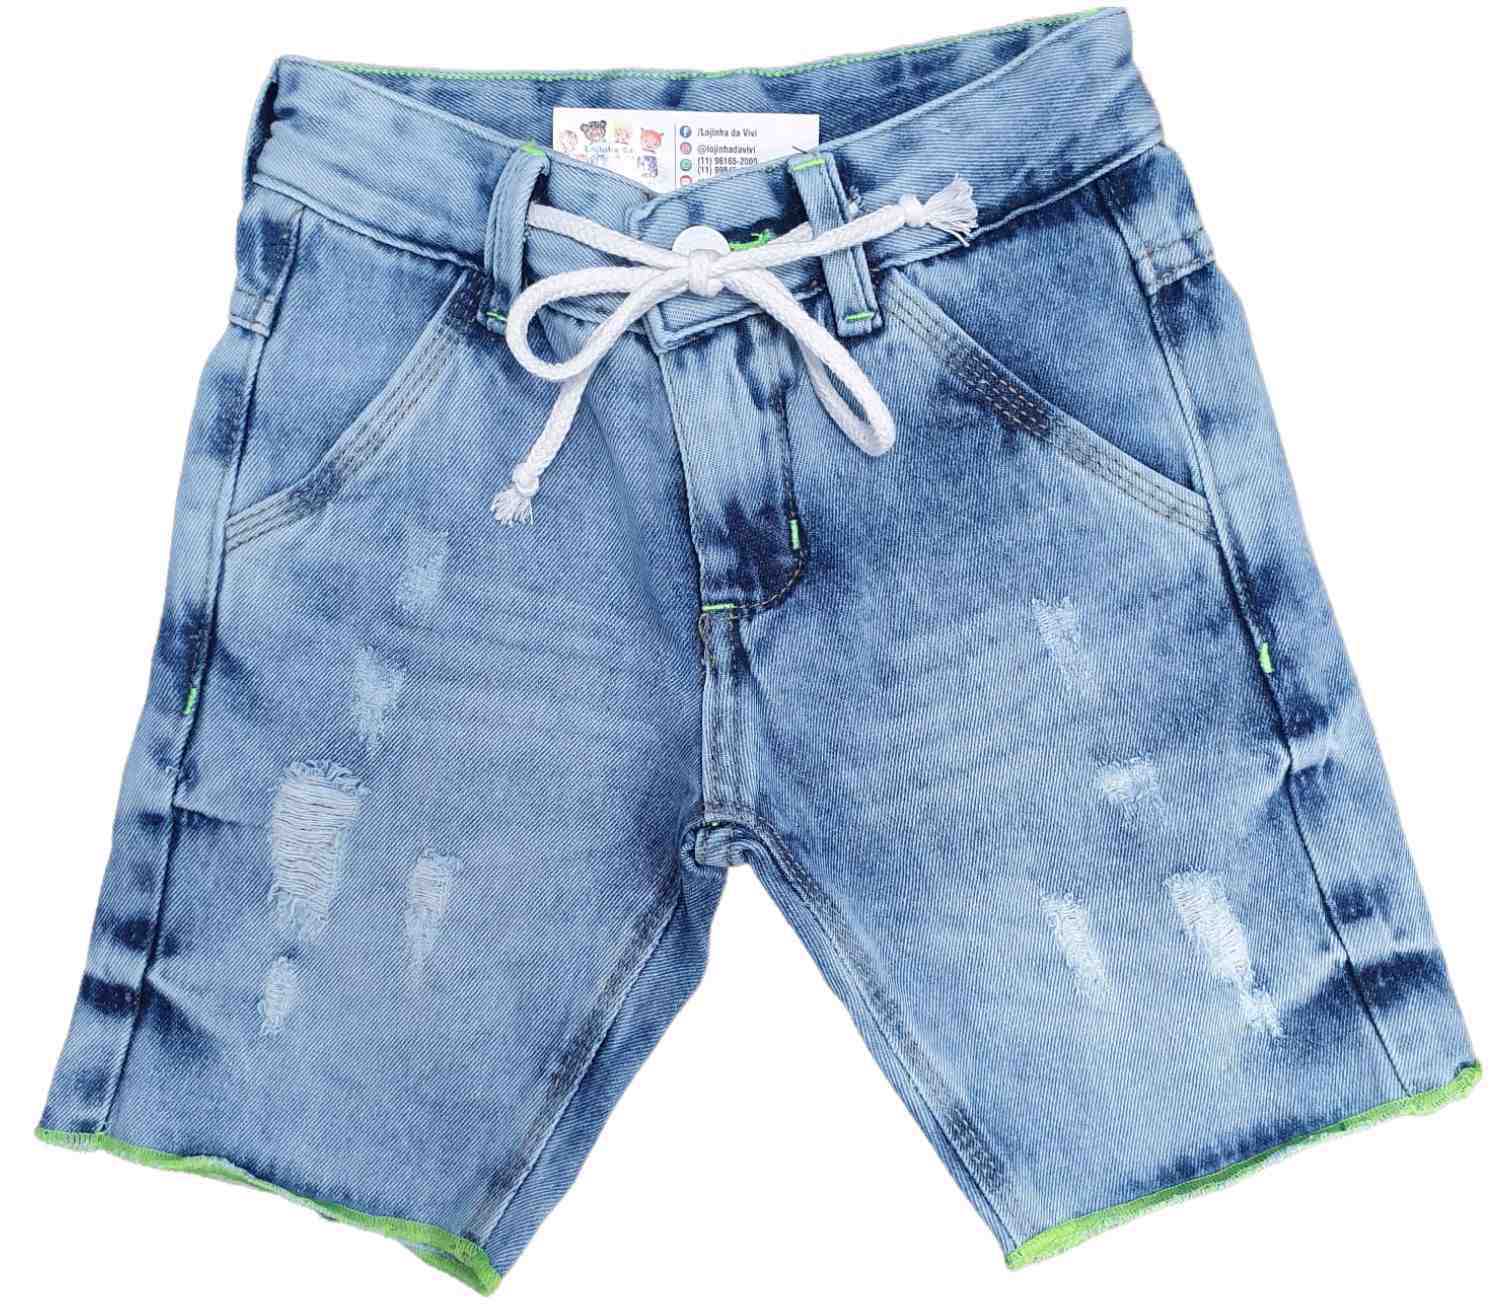 Bermuda Jeans Infantil com Cordão